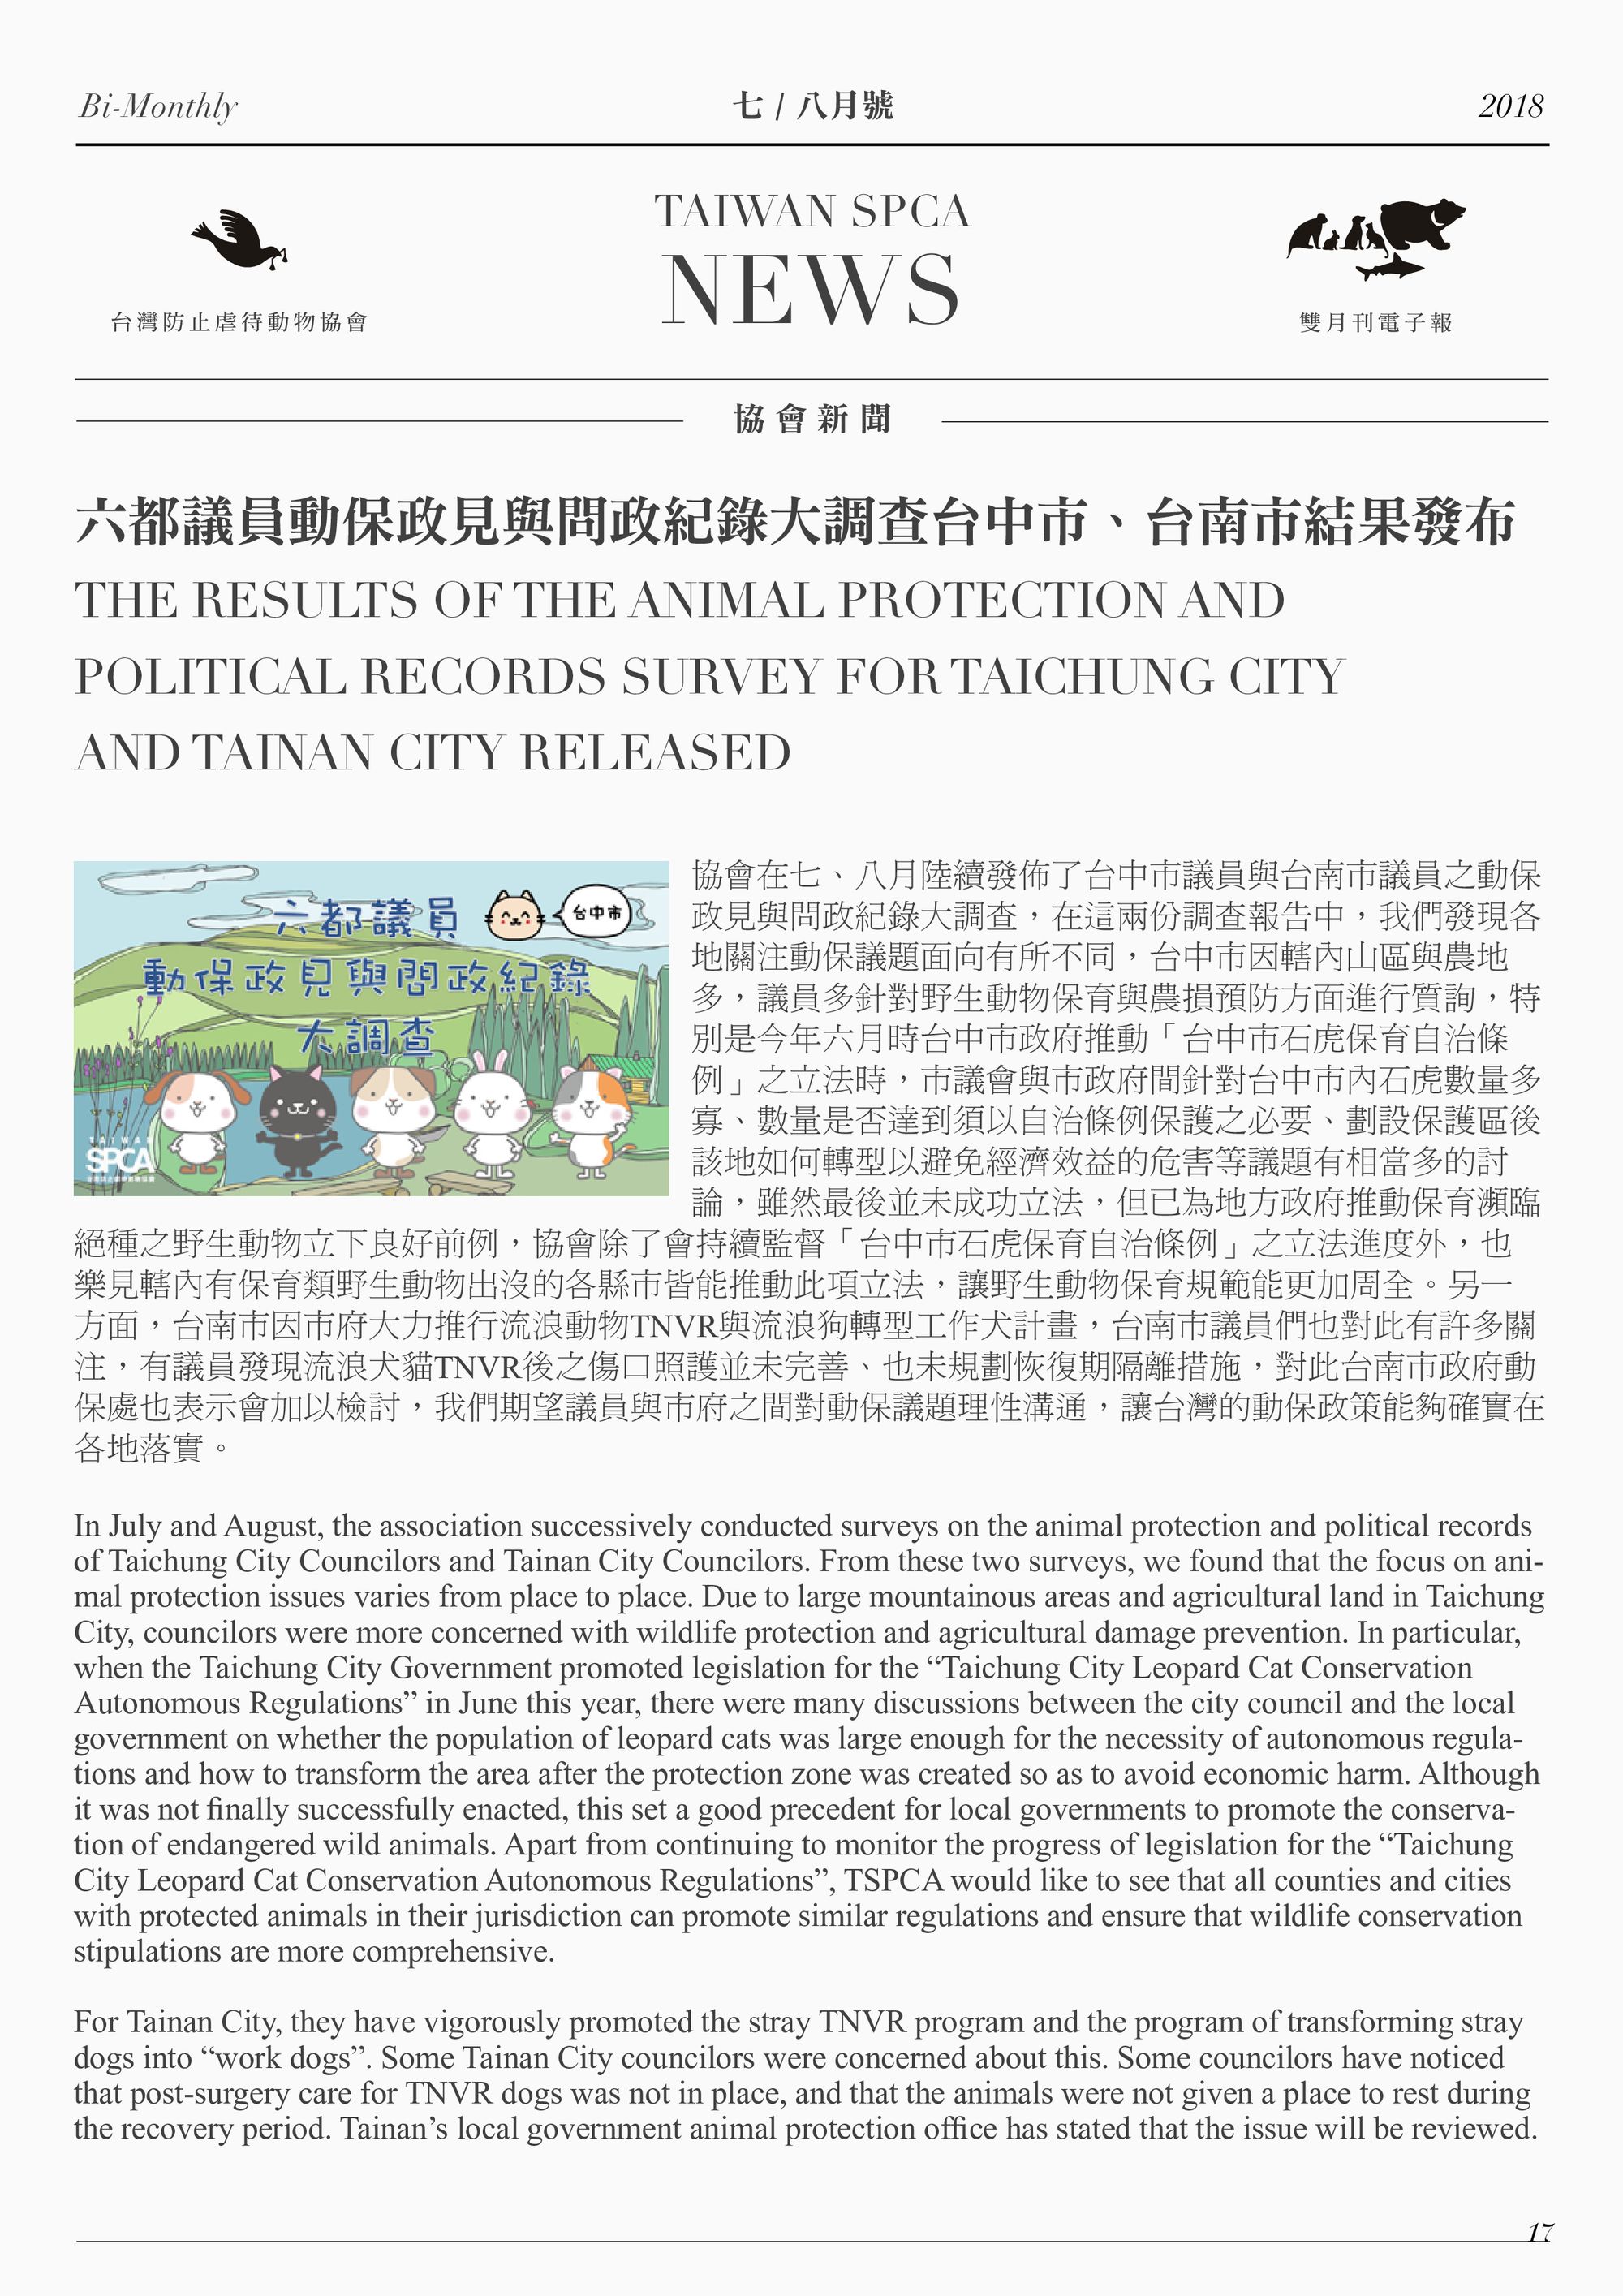 六都議員動保政見與問政紀錄大調查台中市、台南市結果發布